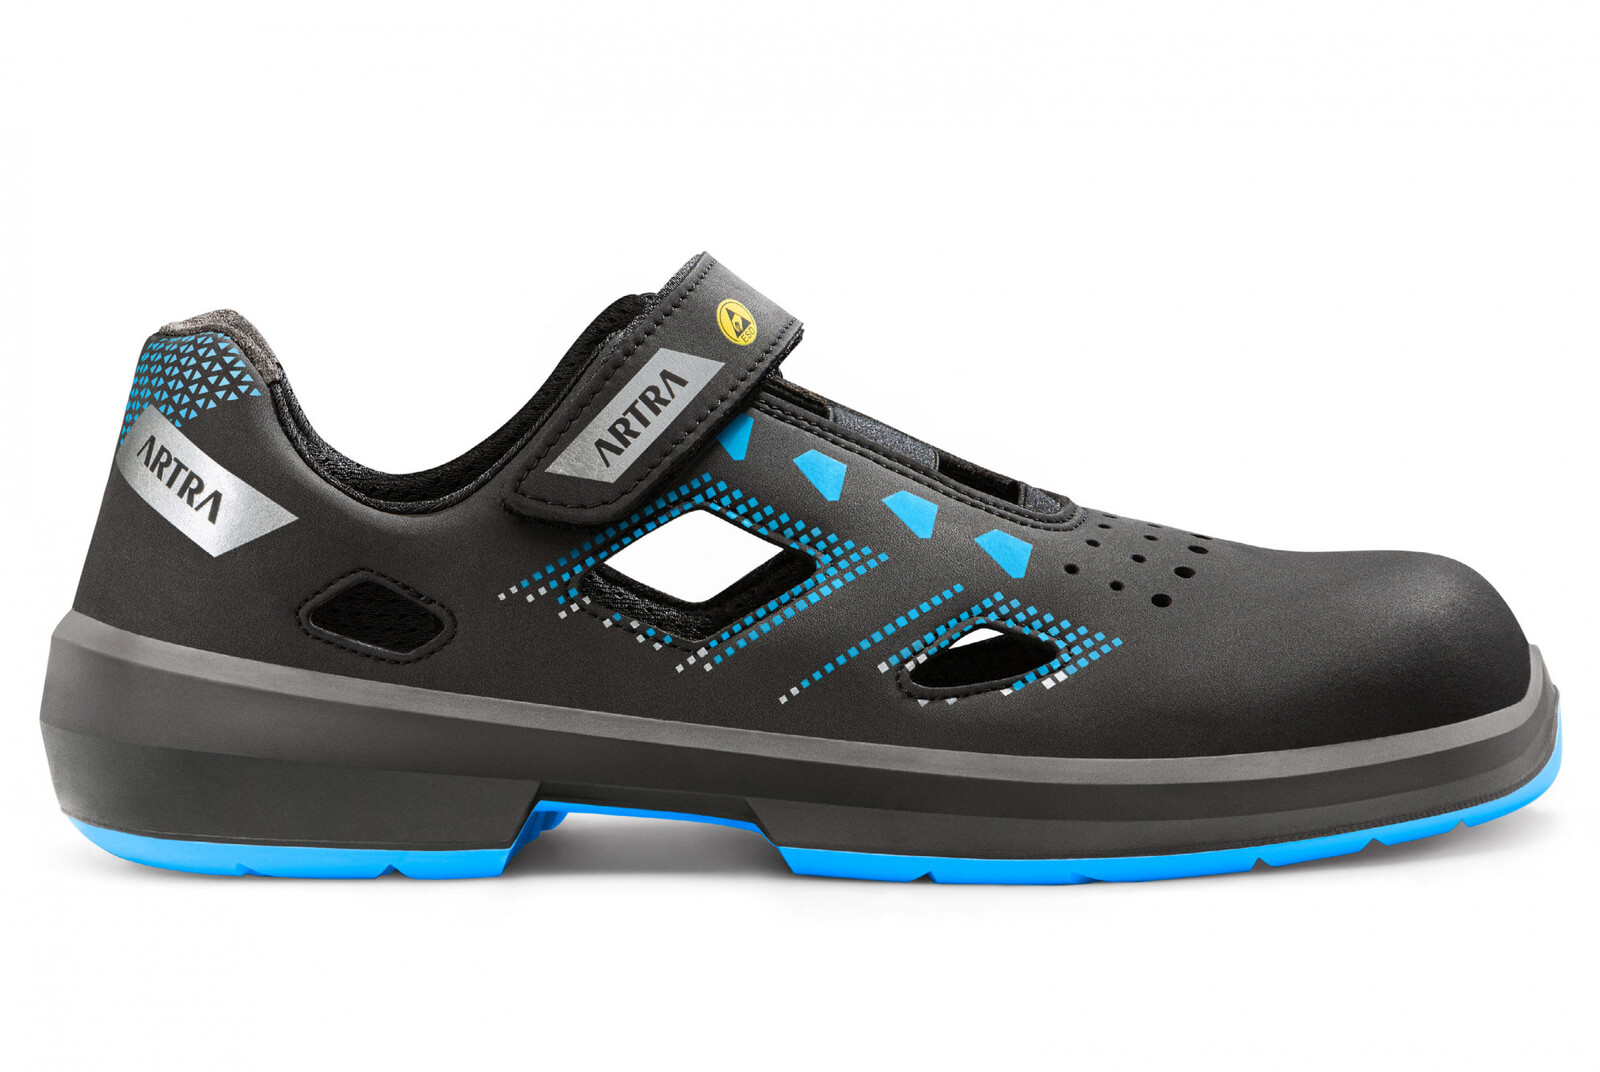 Bezpečnostné sandále Artra Arzo 805 619090 S1P SRC ESD MF - veľkosť: 35, farba: čierna/modrá